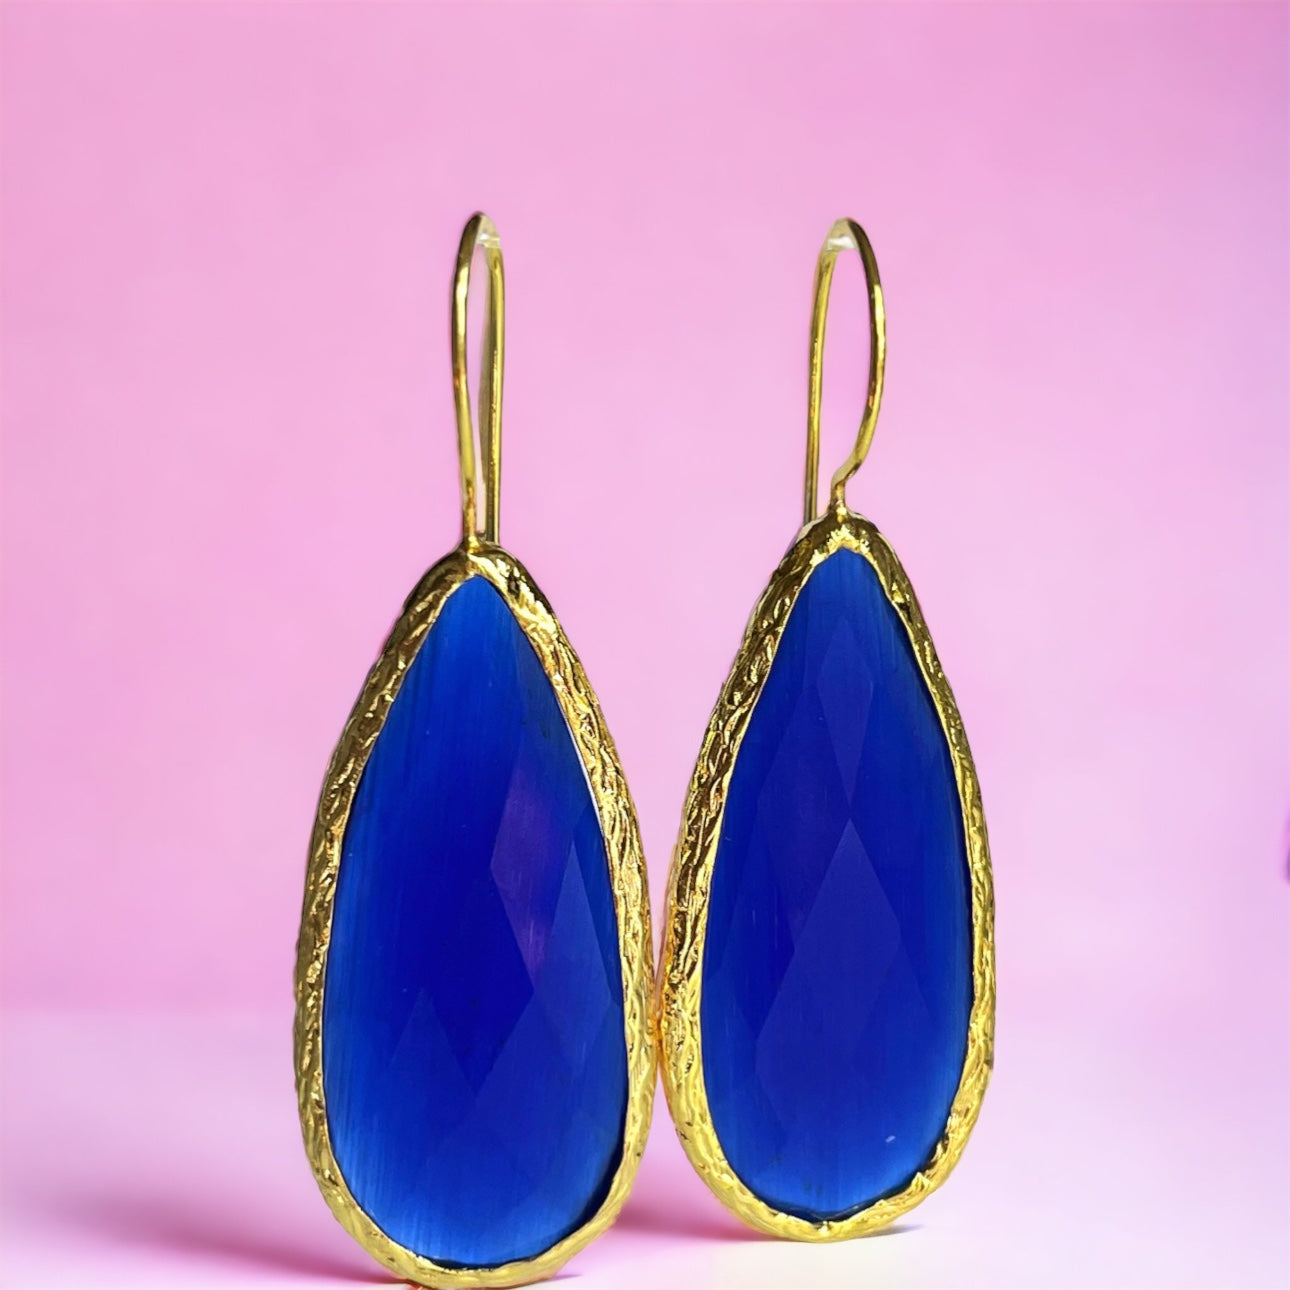 Boucles d’oreilles "ATLANTA" pierre naturelle Agate bleue dorées or fin - longues